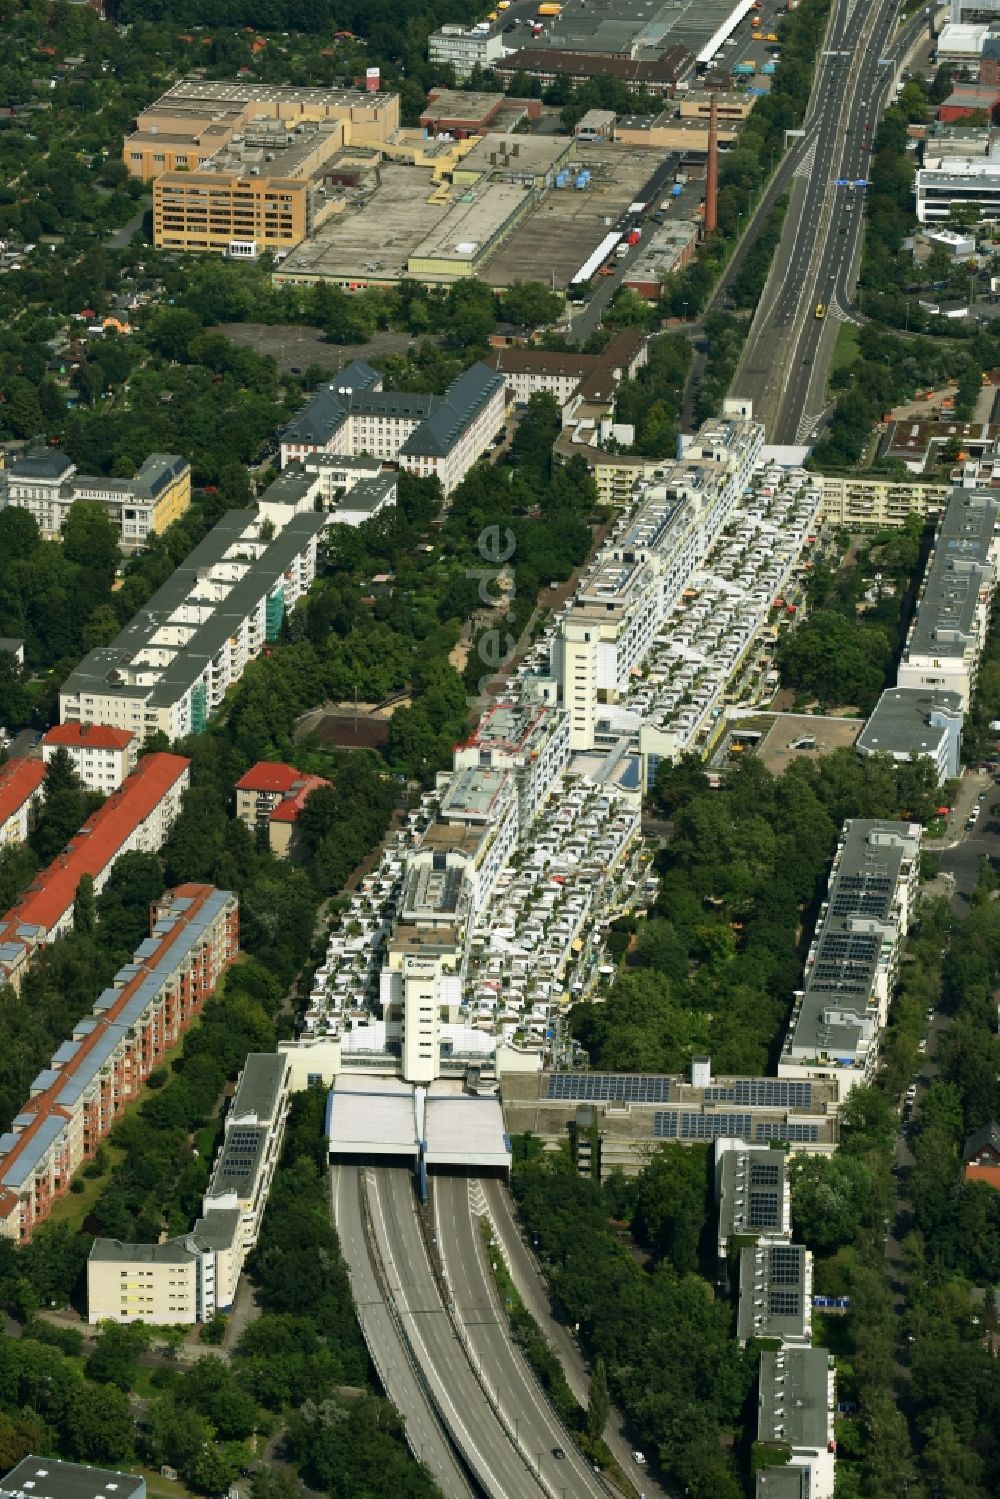 Luftaufnahme Berlin - Dachgarten - Landschaft im Wohngebiet einer Mehrfamilienhaussiedlung in Berlin